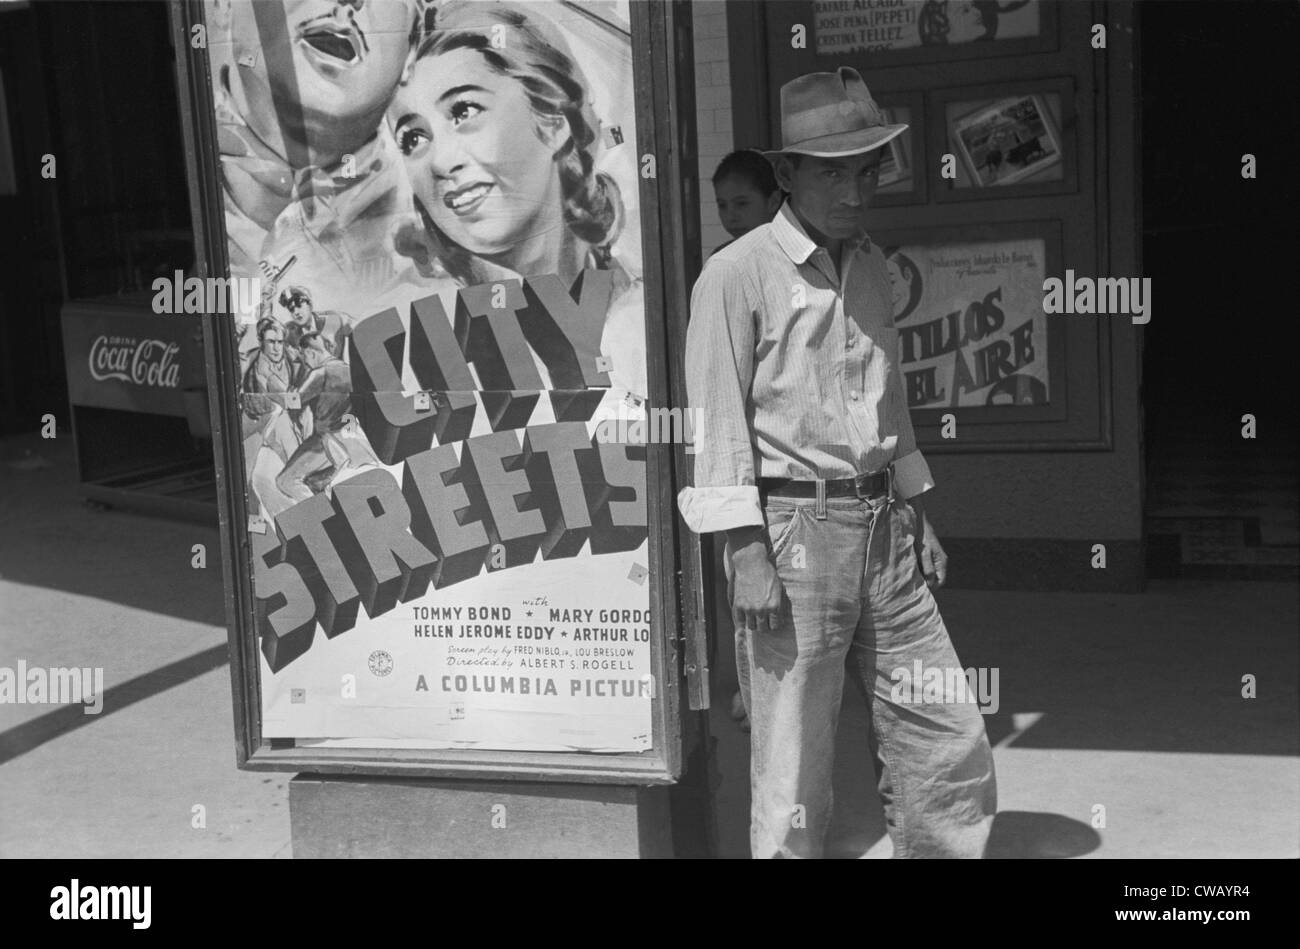 L'homme du Mexique en face d'un cinéma à l'AFFICHE DANS LES RUES DE LA VILLE, San Antonio, Texas, photo de Lee Russell, 1939. Banque D'Images